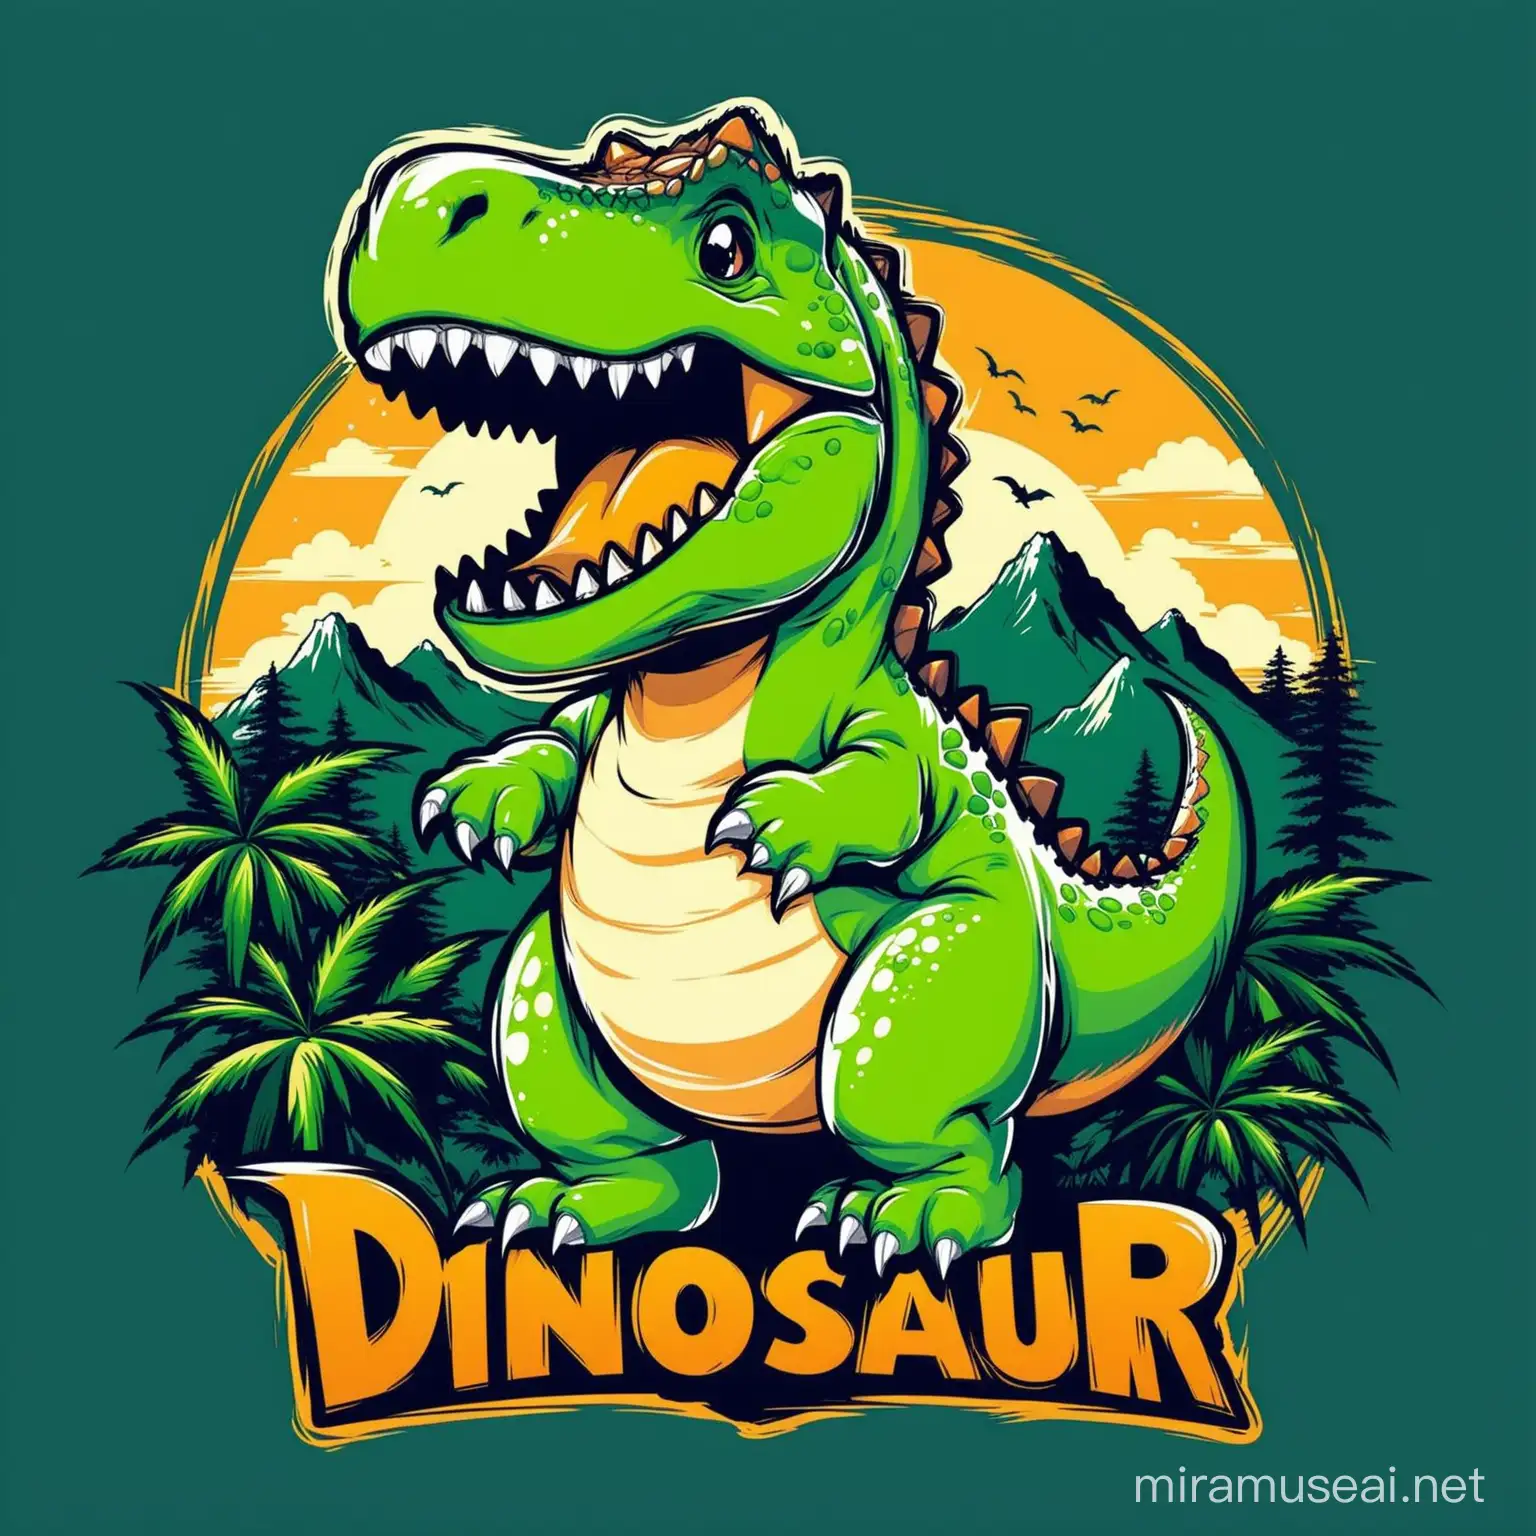 Dinosaur, t-shirt design